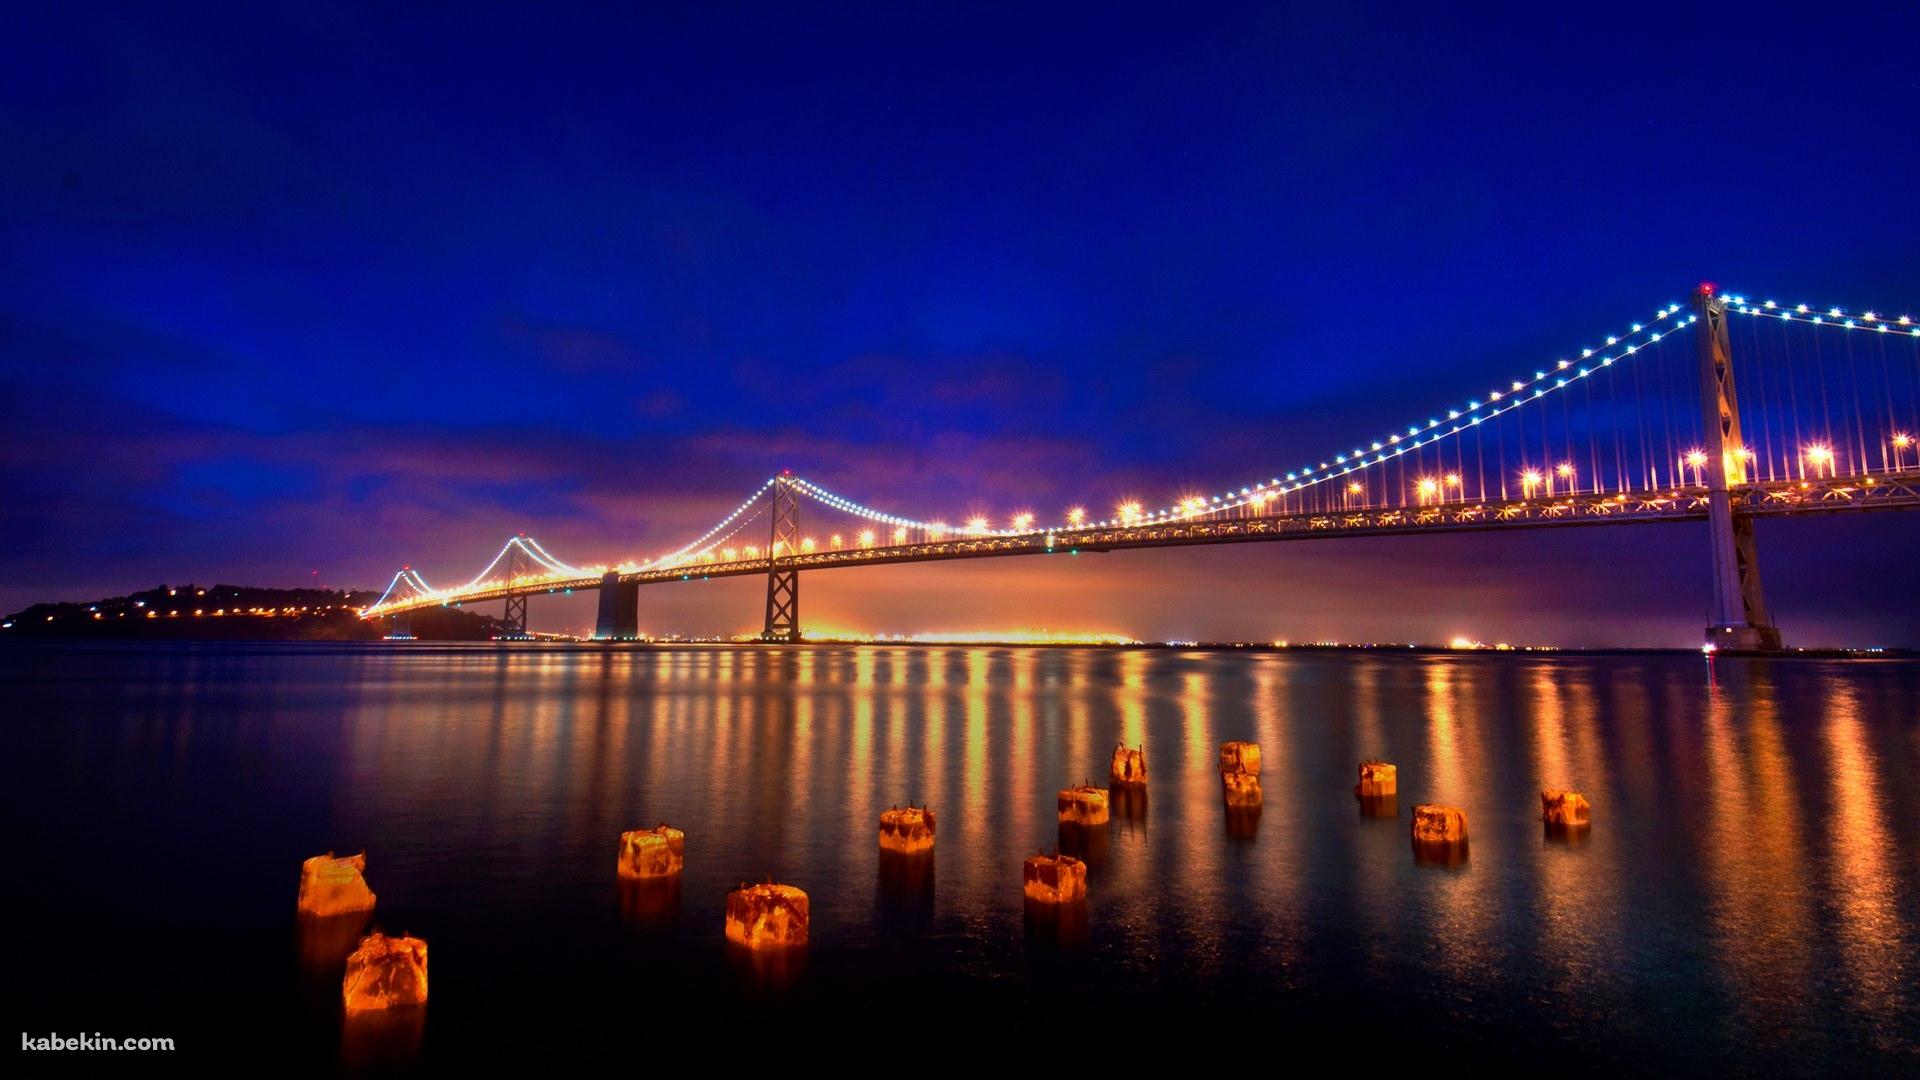 サンフランシスコの大橋の壁紙(1920px x 1080px) 高画質 PC・デスクトップ用